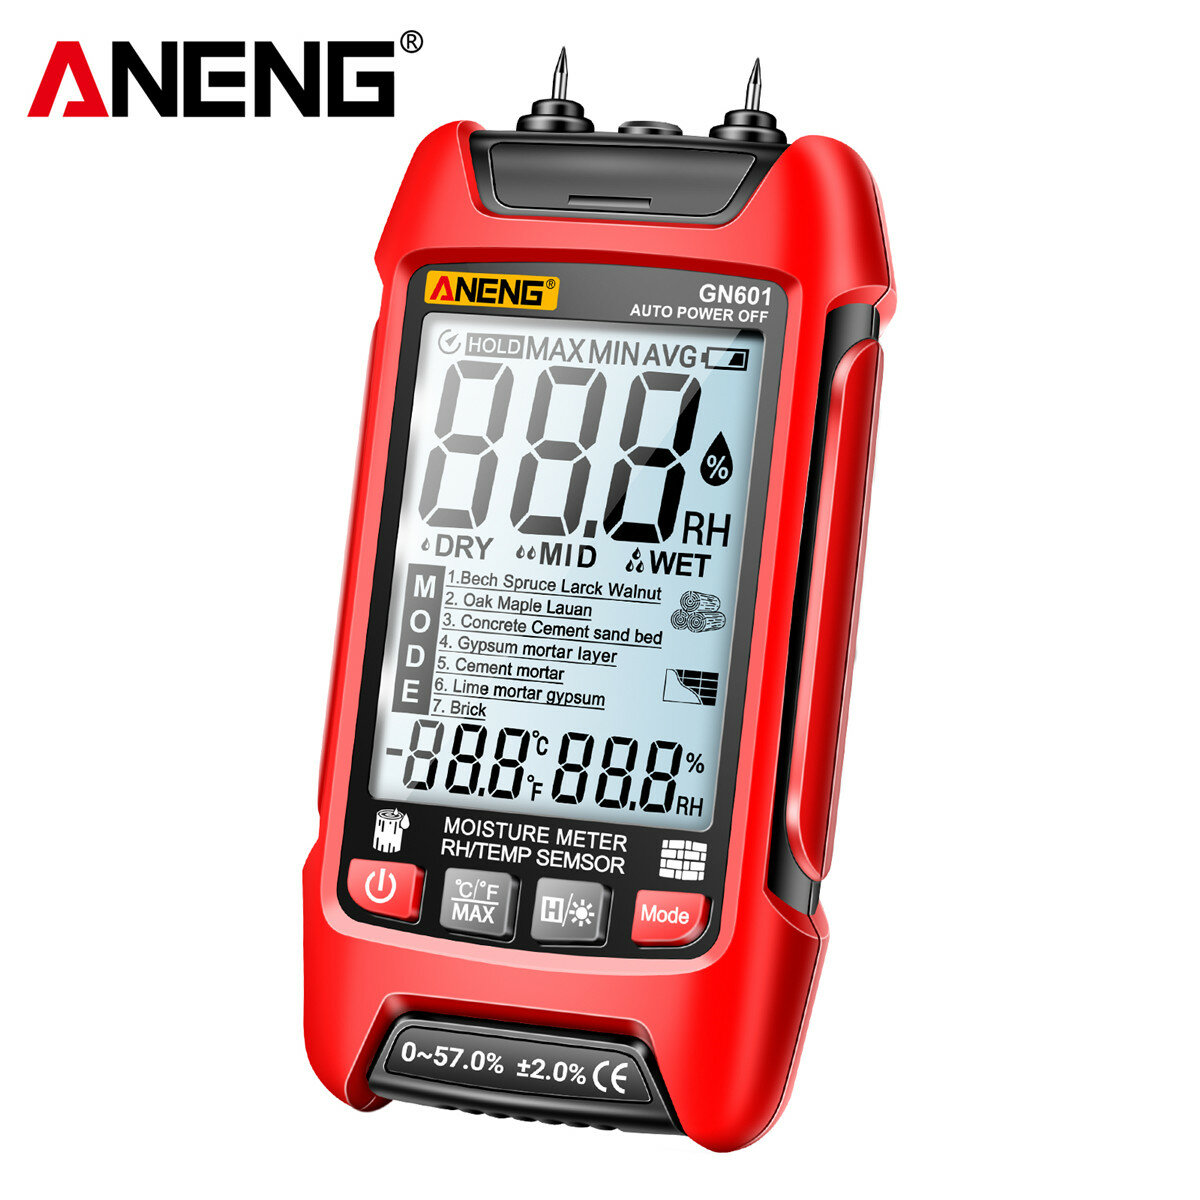 ANENG GN601 vochtmeter - nauwkeurige en snelle testen zonder batterij - hoogwaardige vochtanalyser voor hout, papier, graan en meer